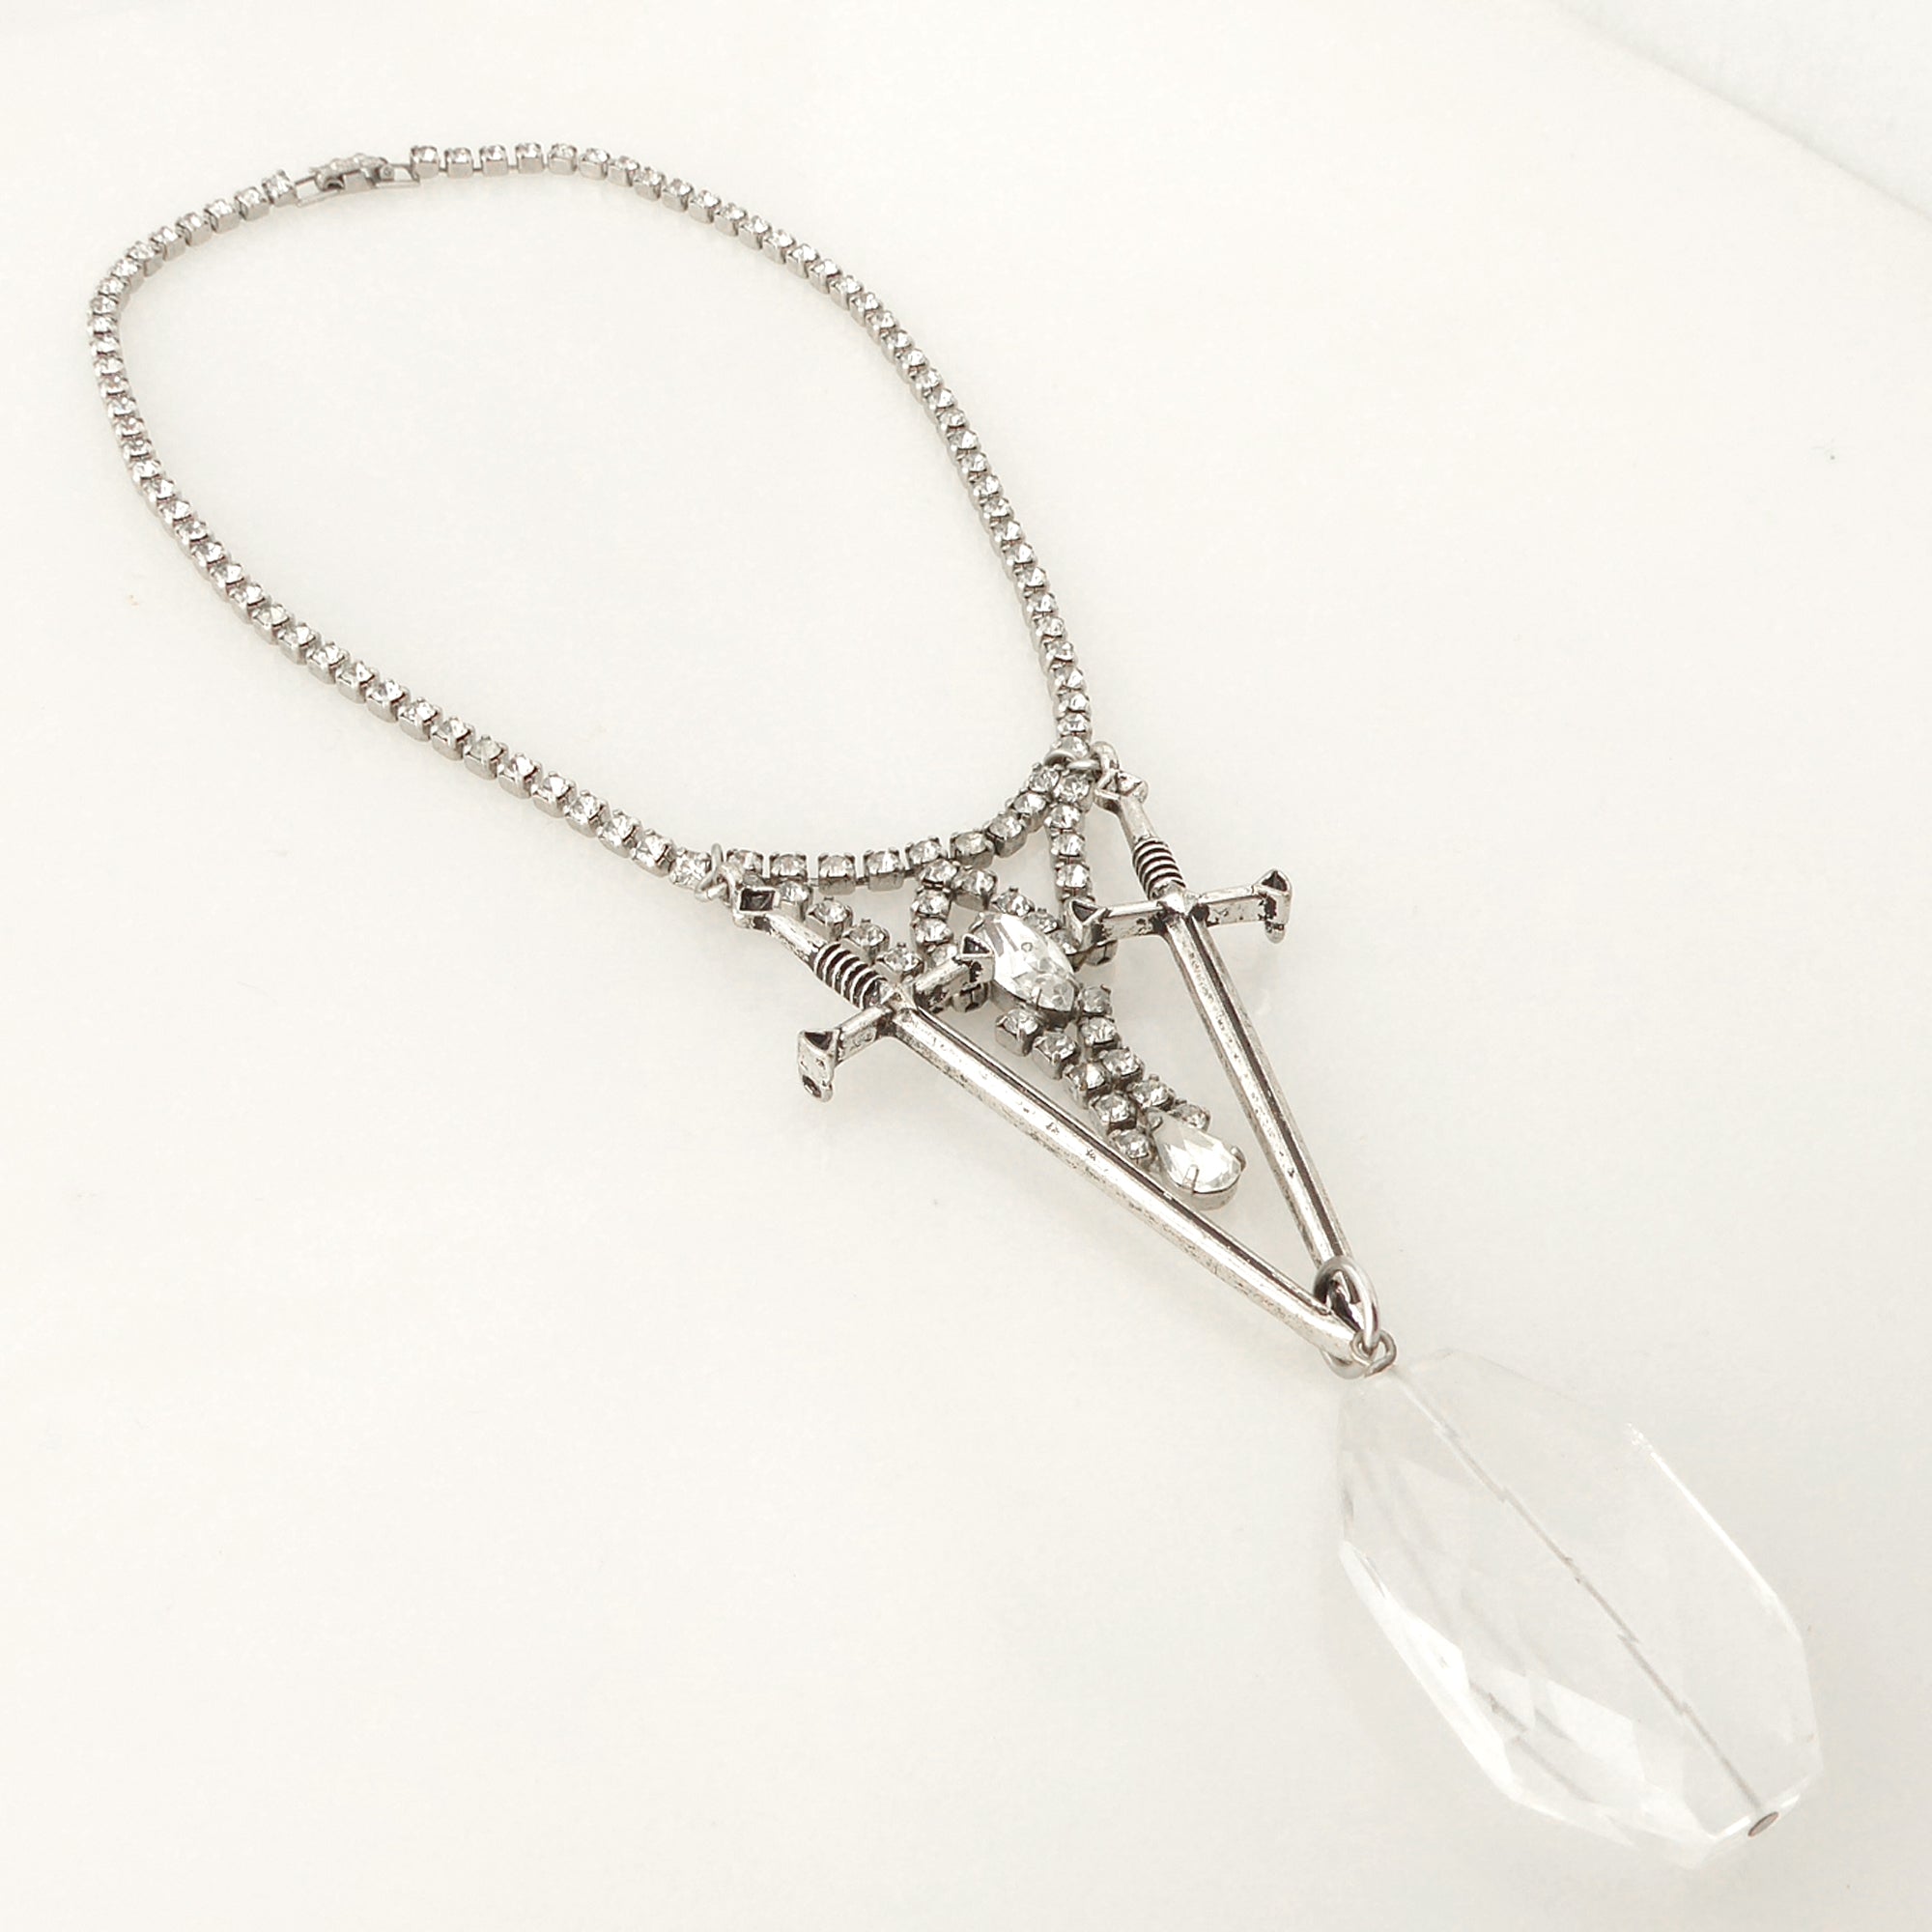 Dual sword quartz necklace by Jenny Dayco 2